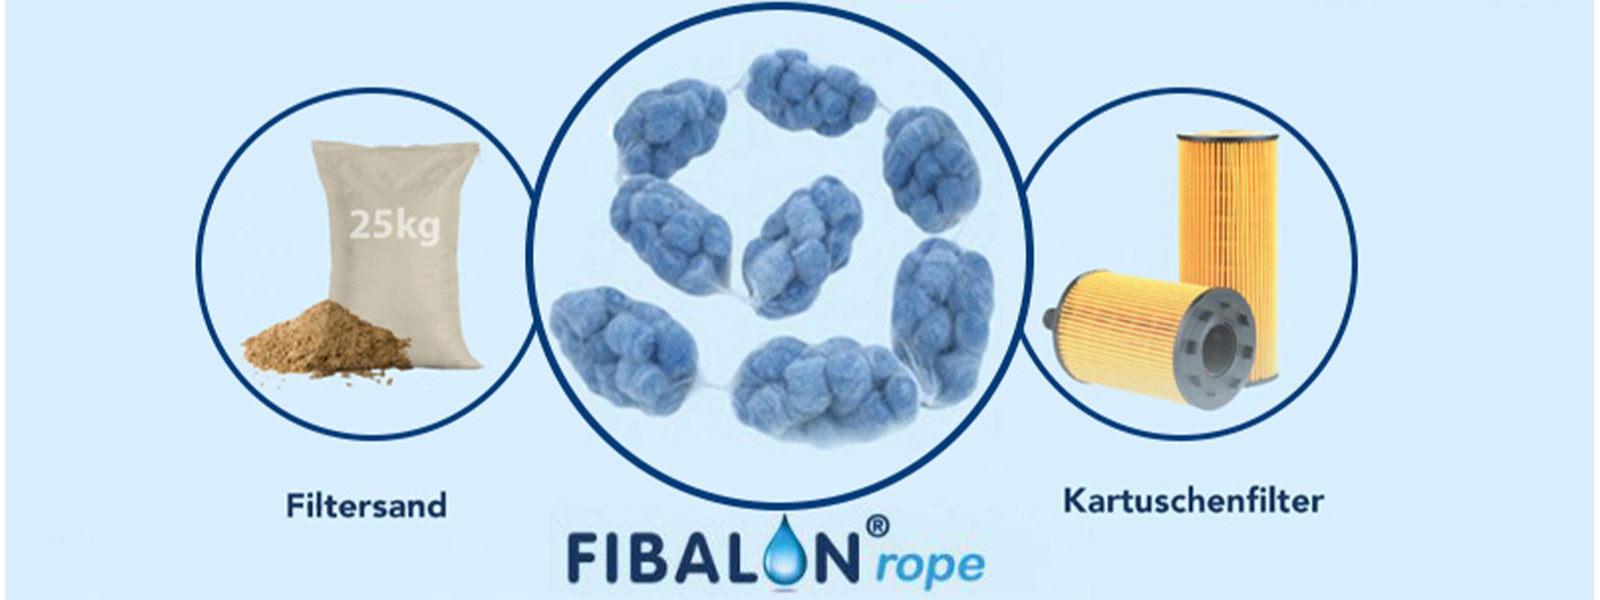 FIBALON rope - FIBALON rope ersetzt Kartuschenfilter oder 25 kg Filtersand